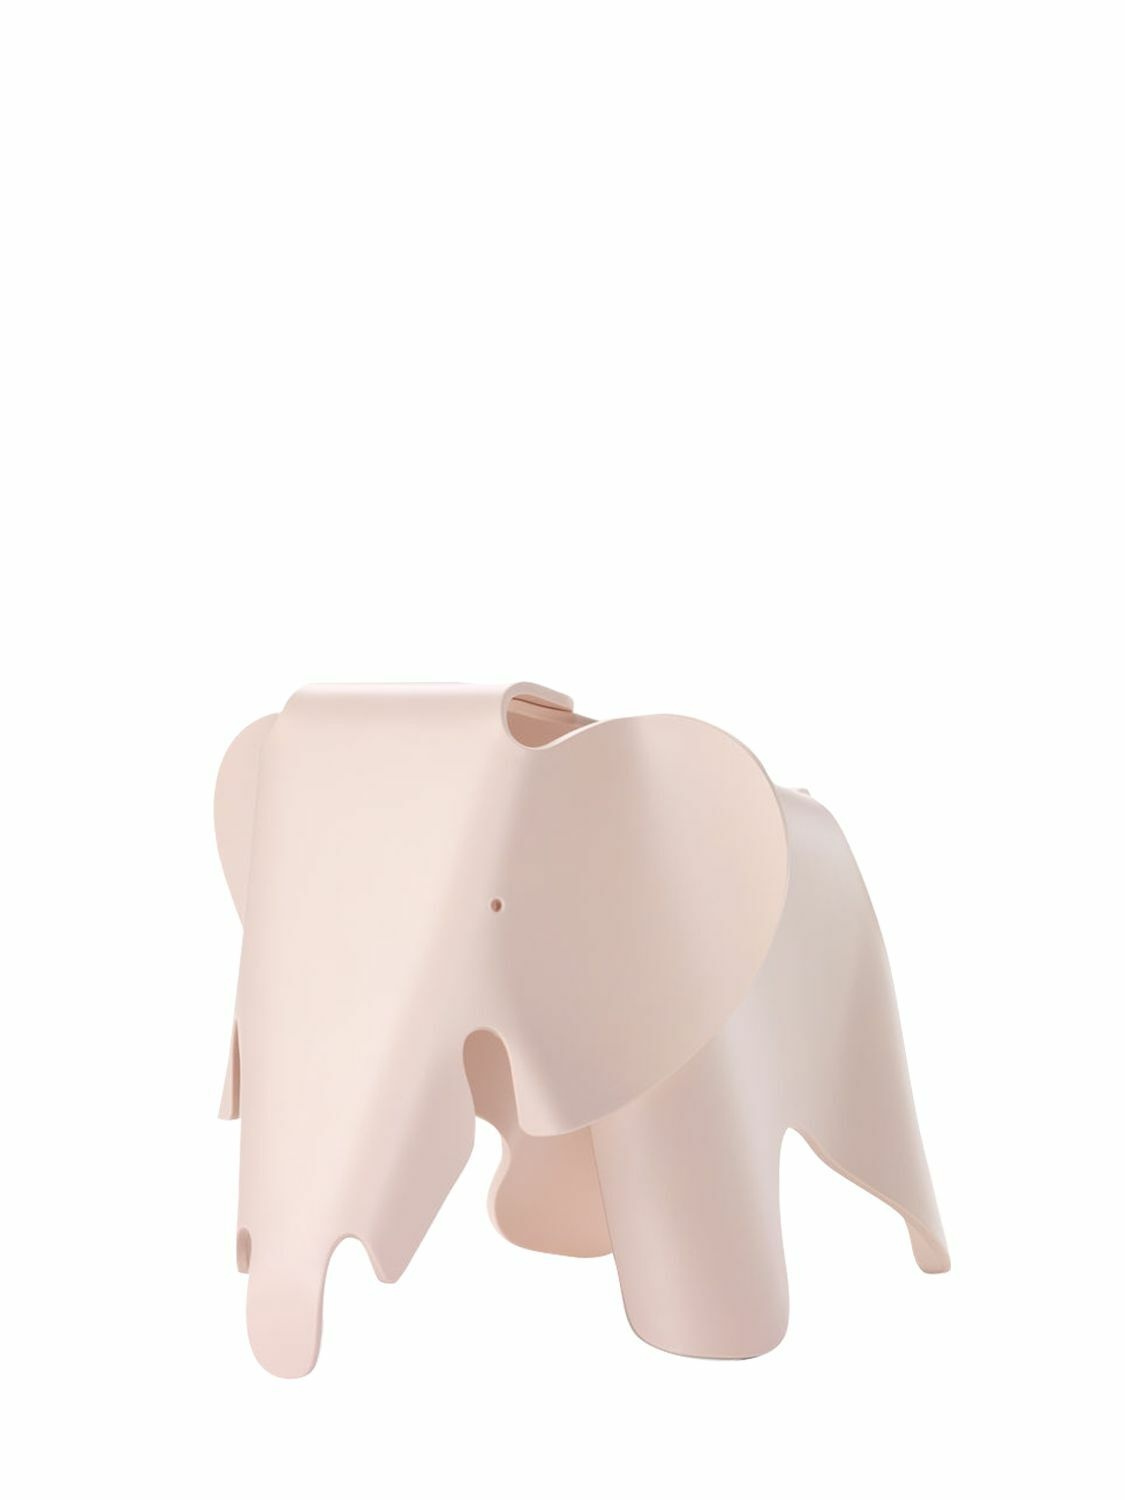 Photo: VITRA Small Eames Elephant